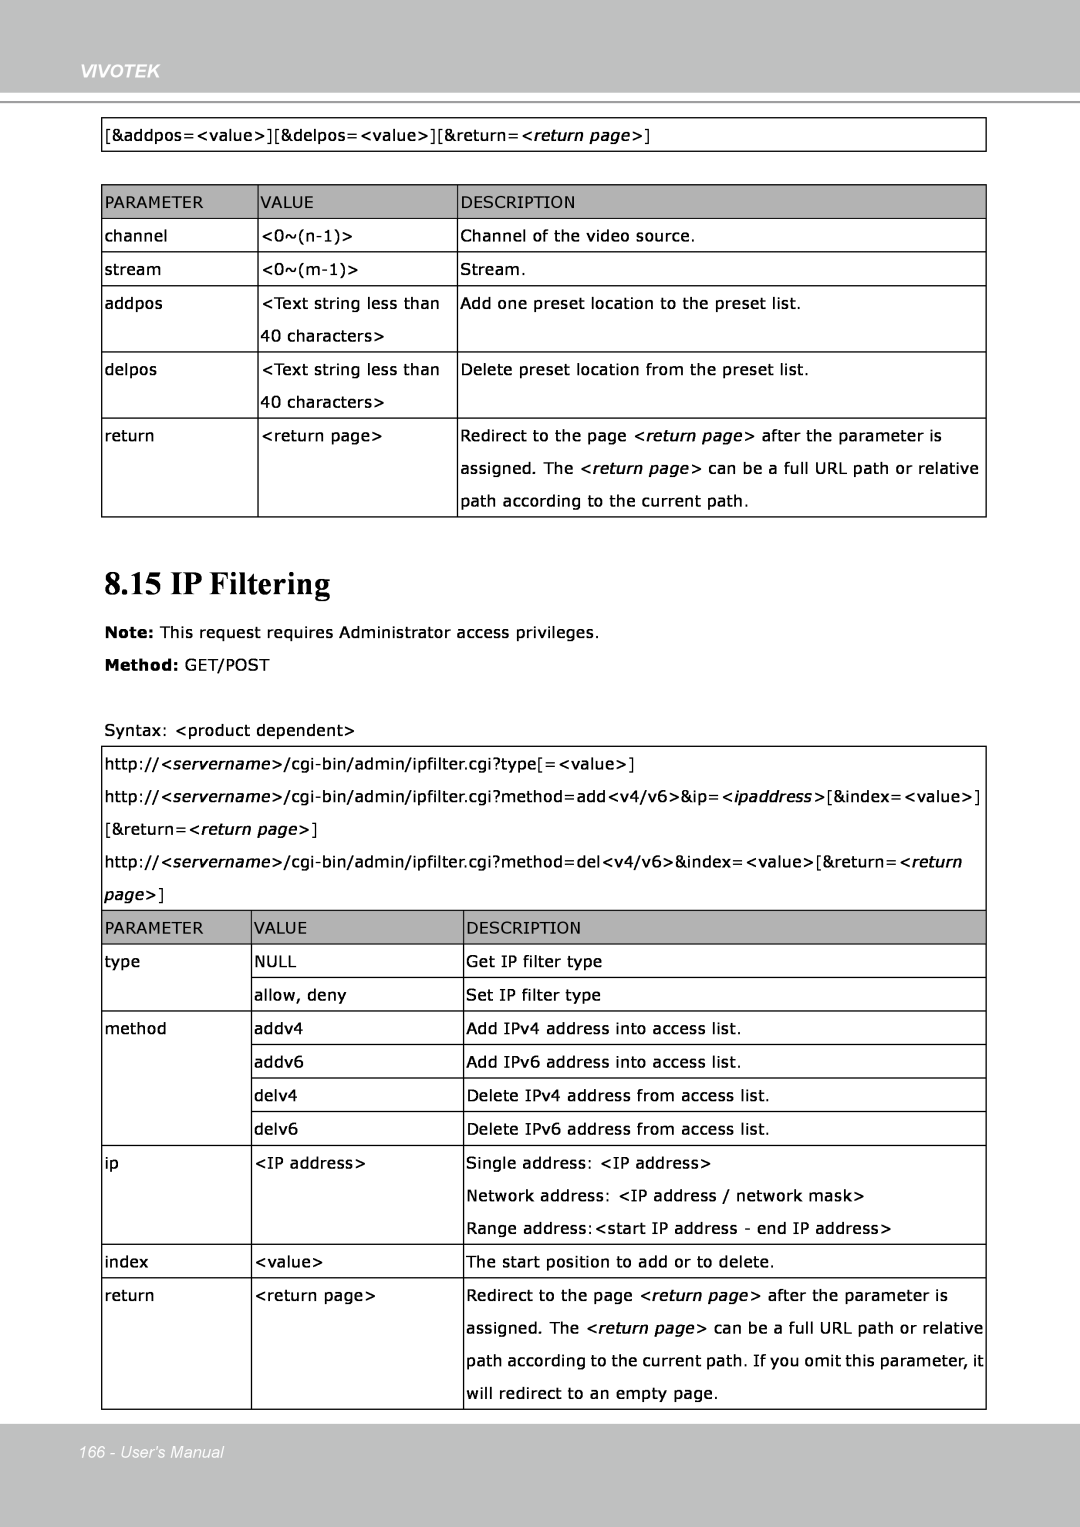 Vivotek IP8151 manual IP Filtering, Vivotek, Method: GET/POST, Users Manual 